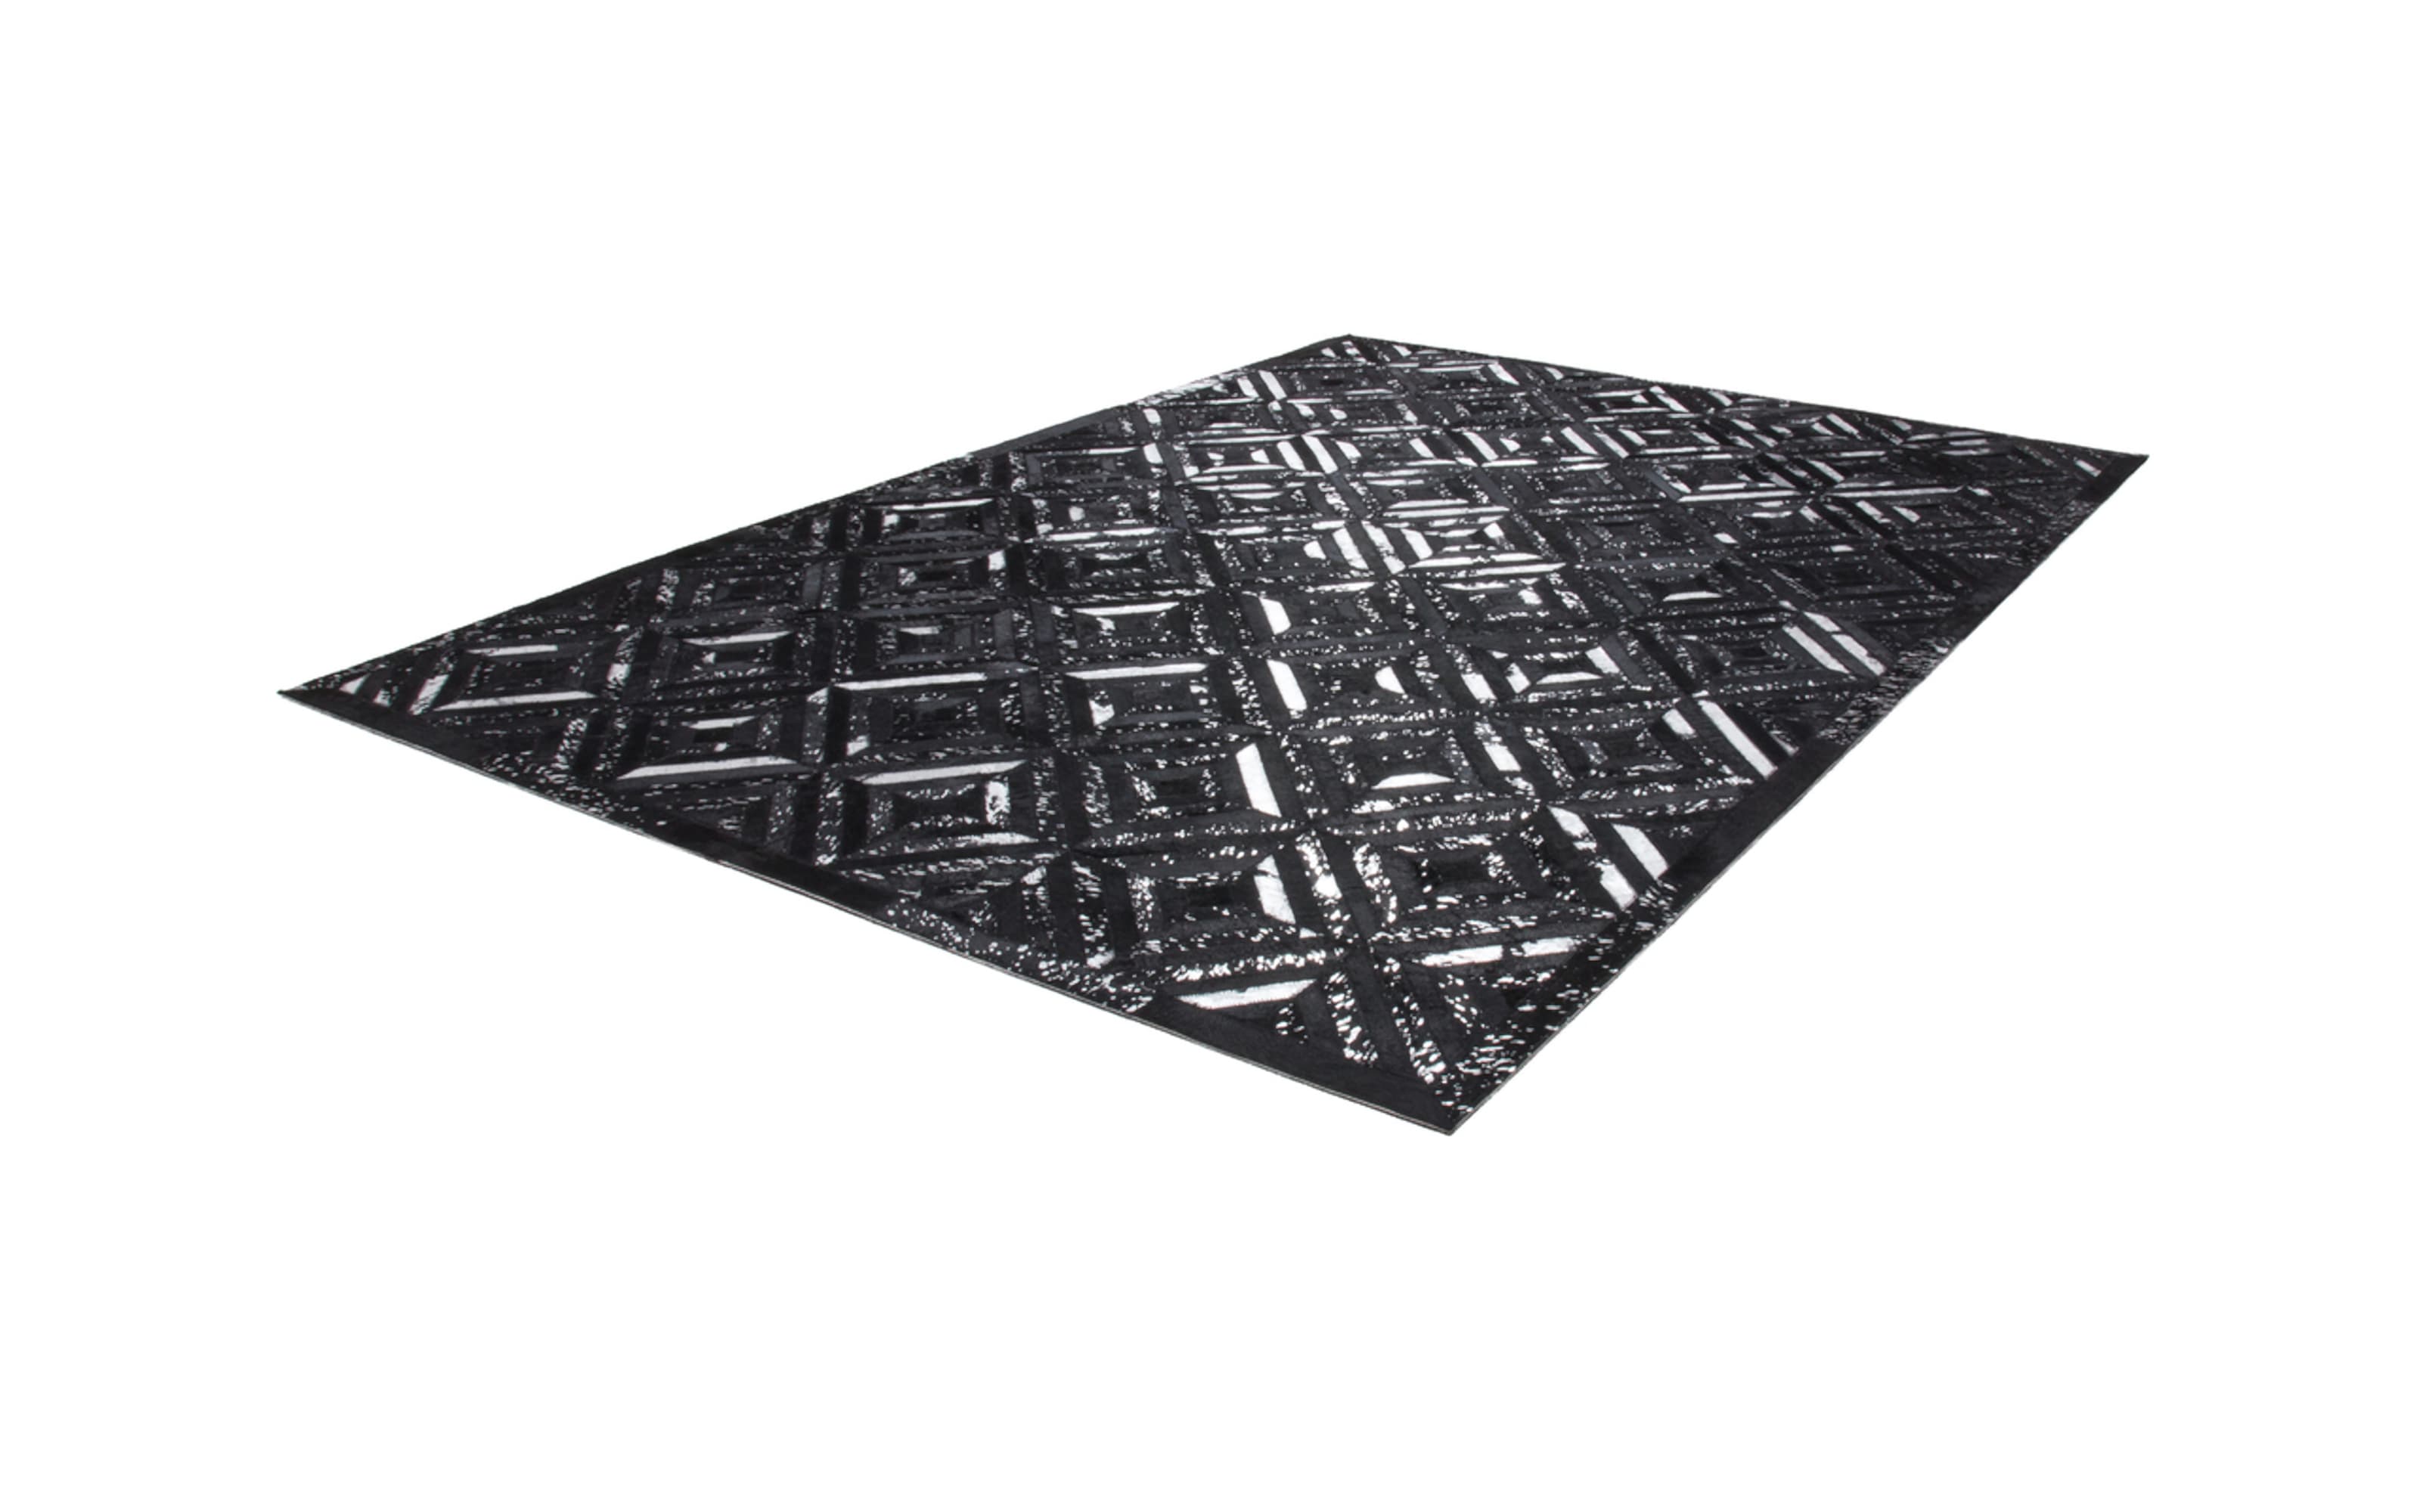 Teppich Spark 410 in schwarz-silber, 160 x 230 cm